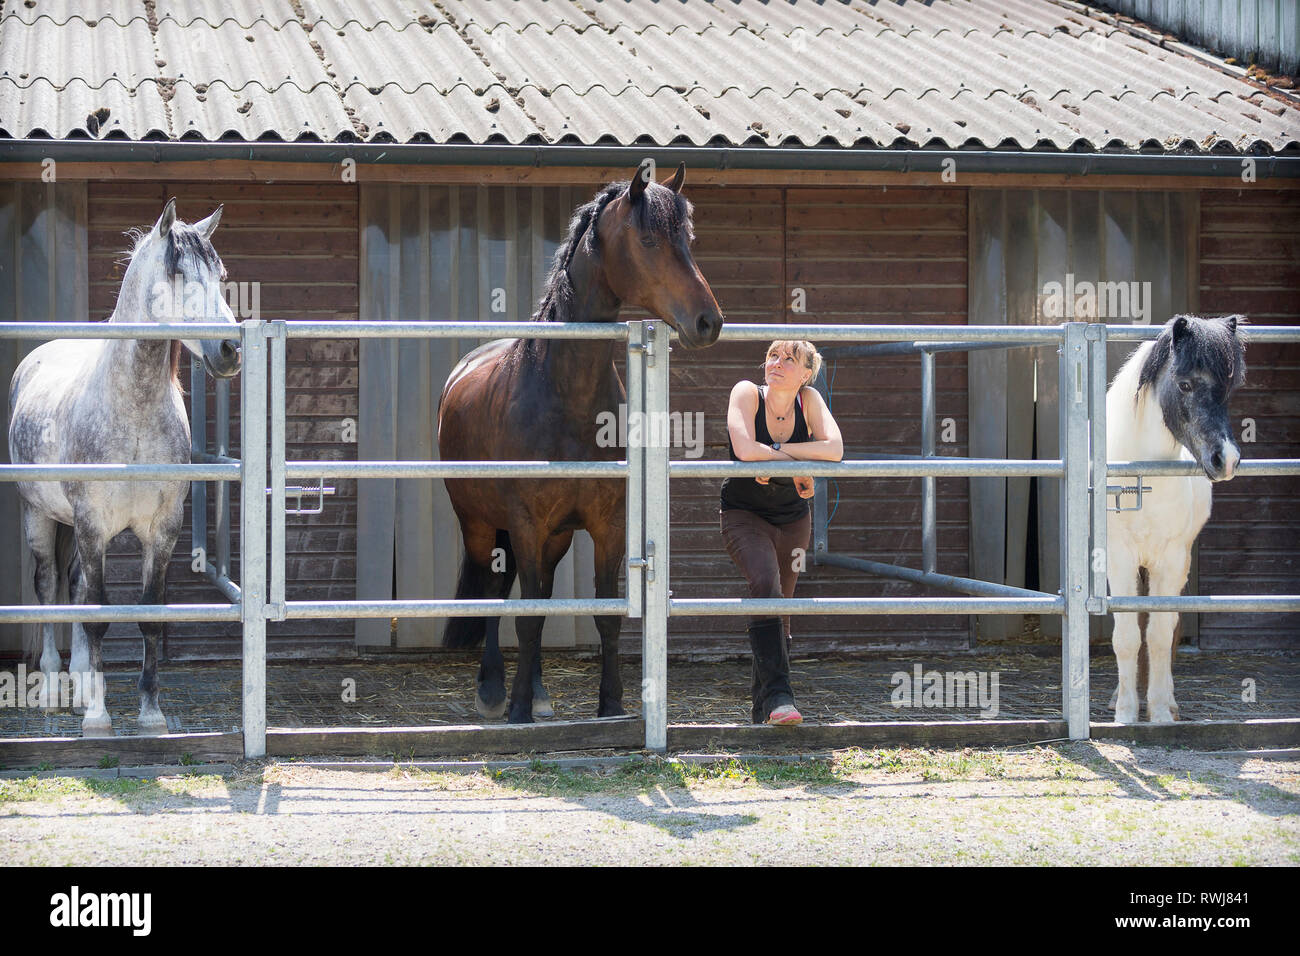 Les chevaux domestiques et d'une femme dans un mini-enclos. Allemagne Banque D'Images